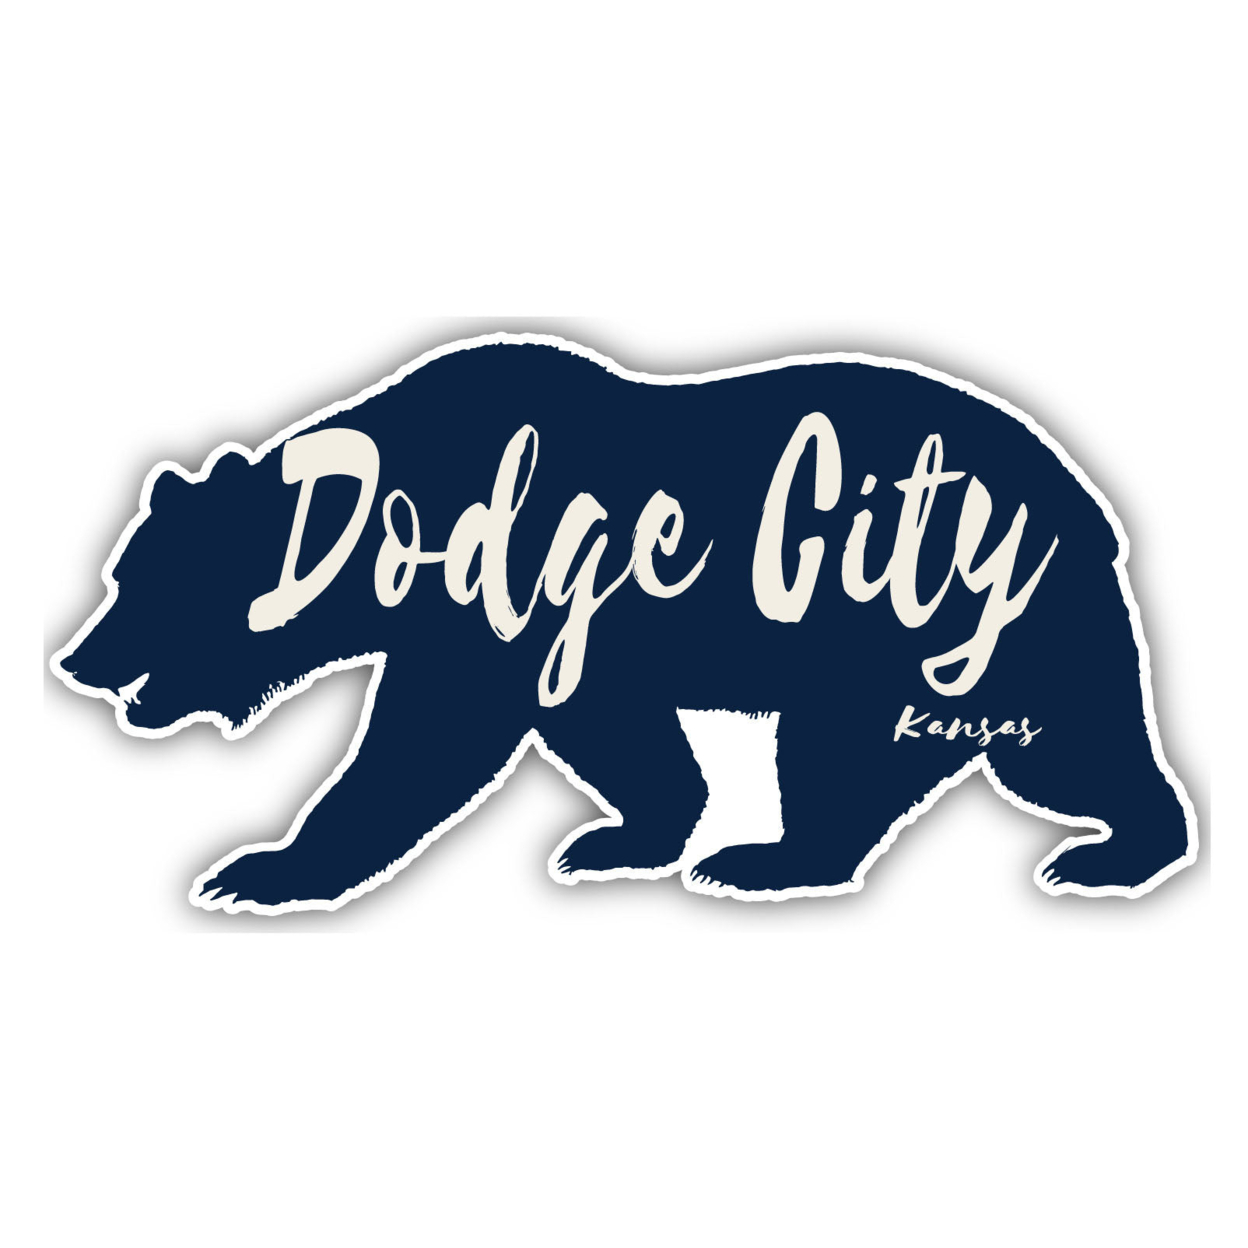 Dodge City Kansas Souvenir Decorative Stickers (Choose Theme And Size) - Single Unit, 4-Inch, Tent